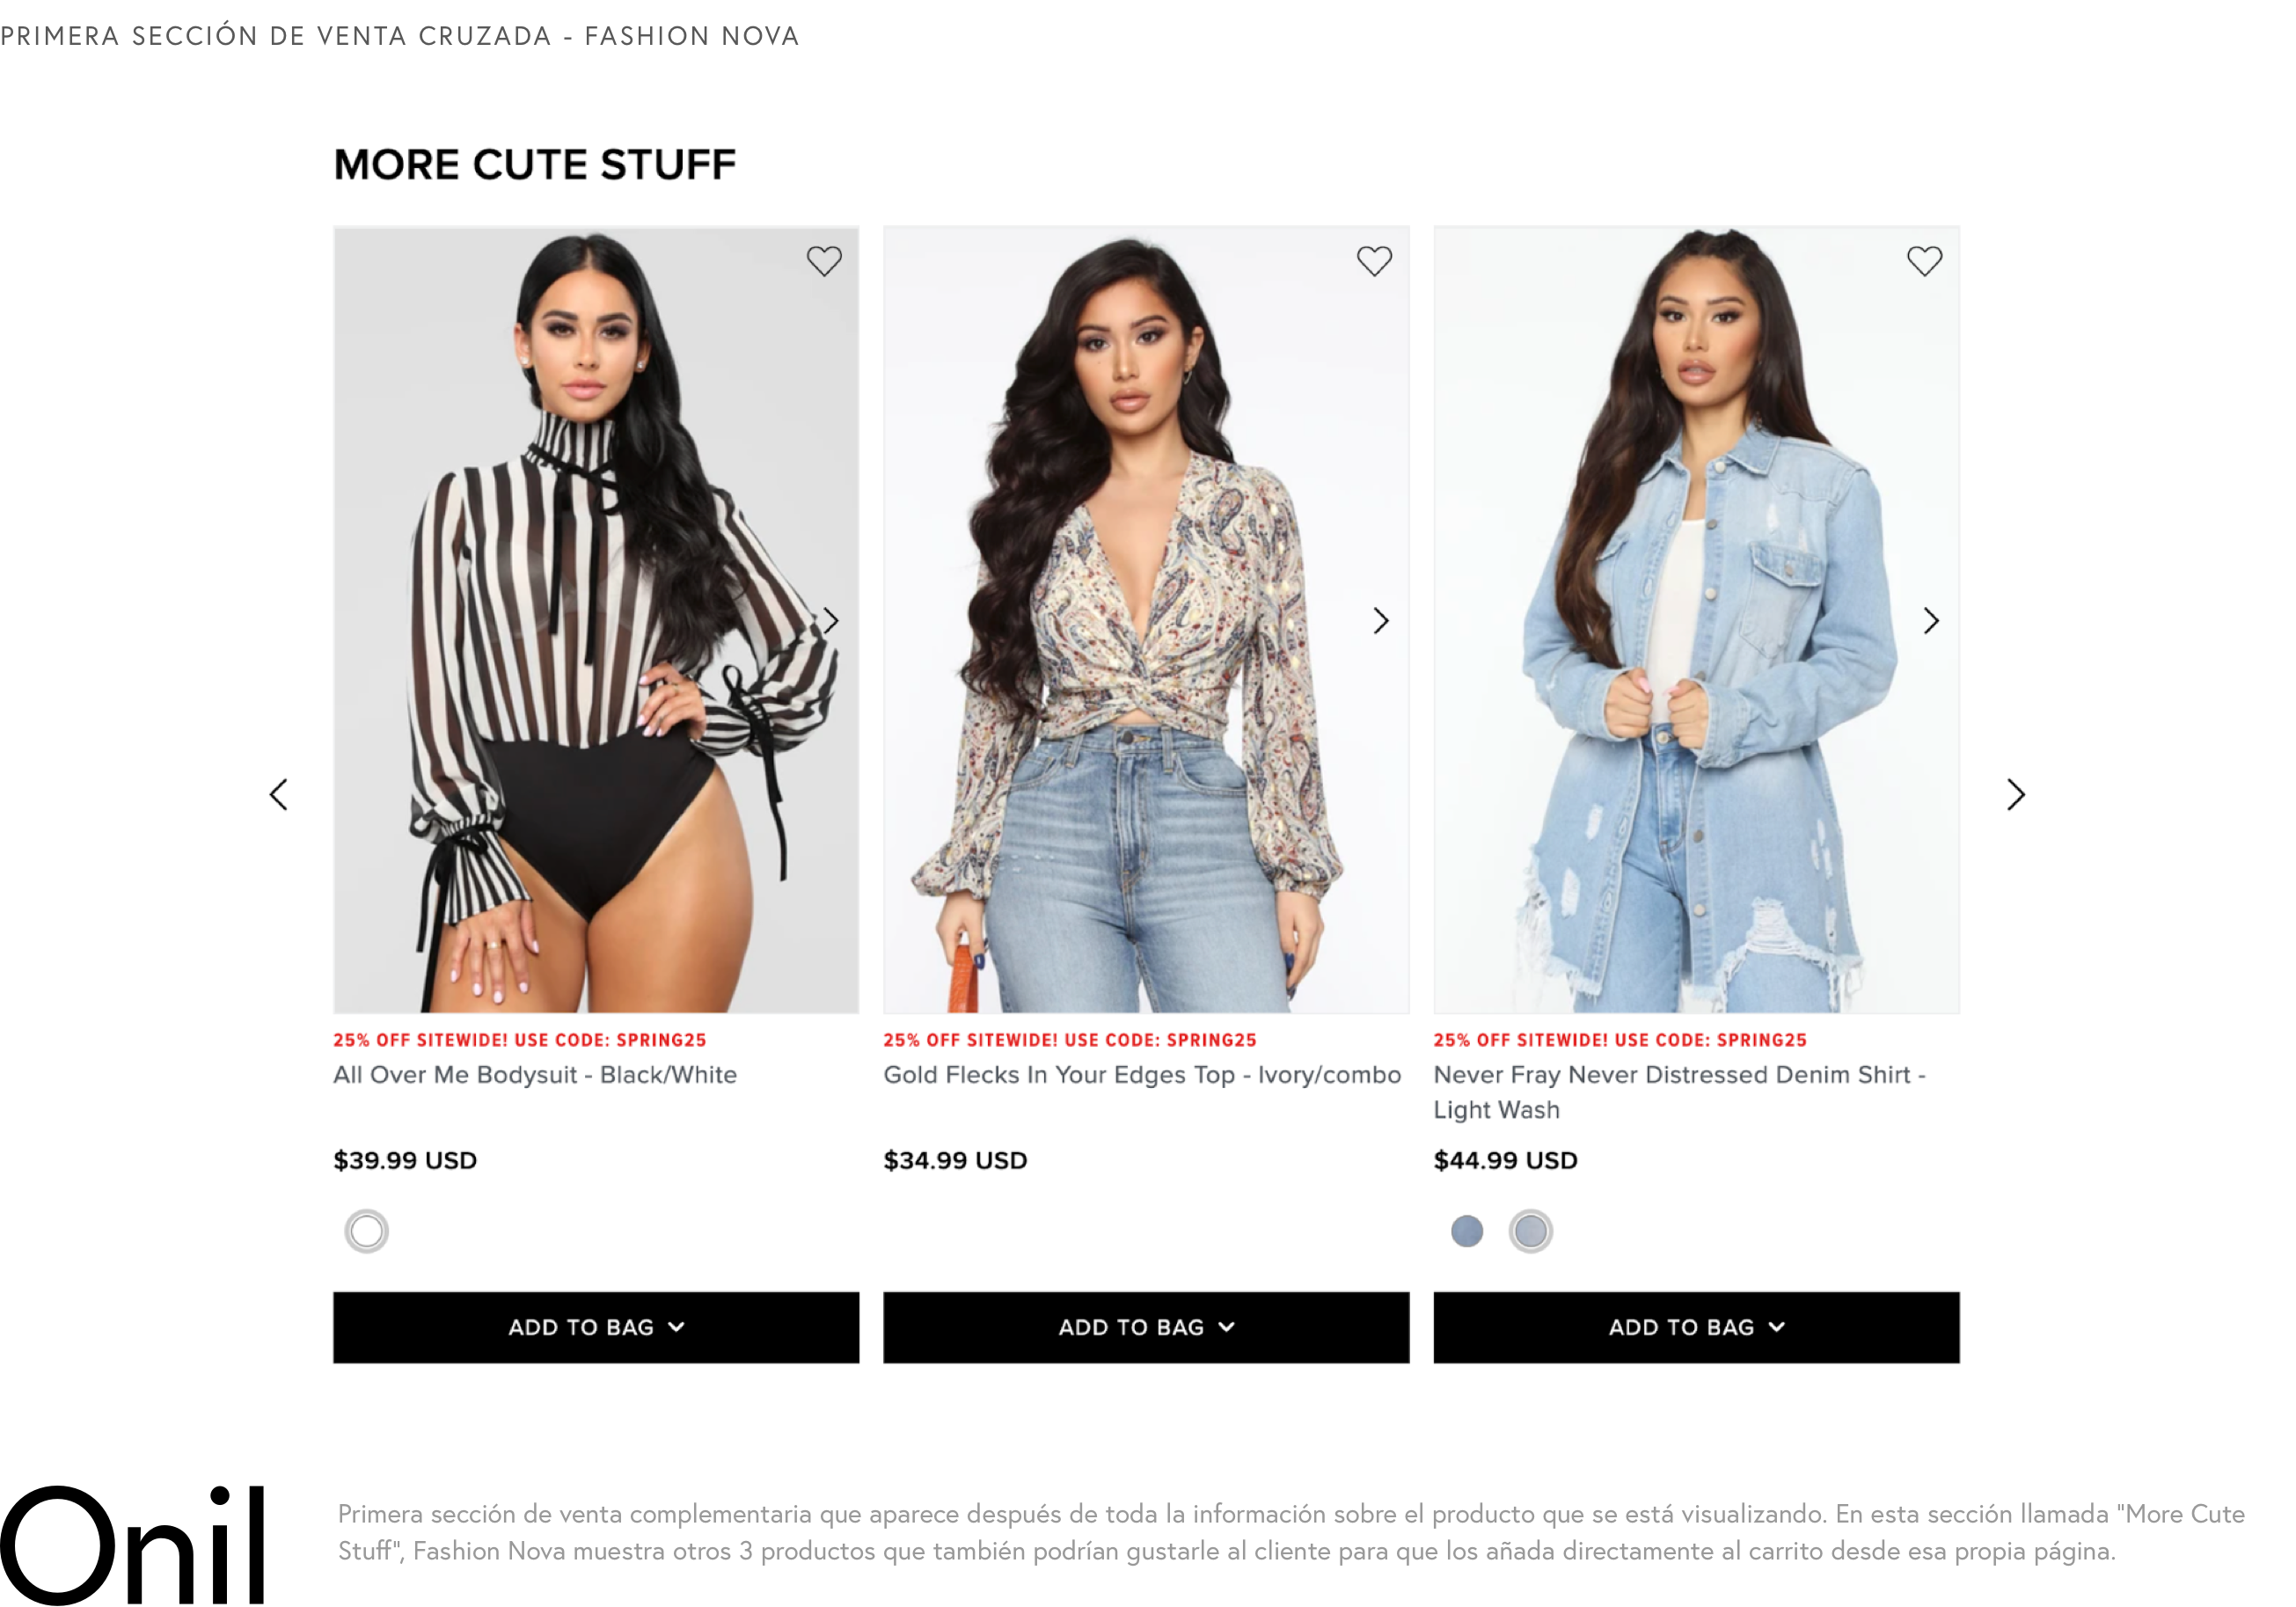 Primera sección de venta cruzada - En esta sección llamada “More Cute Stuff”, Fashion Nova muestra otros 3 productos que también podrían gustarle al cliente